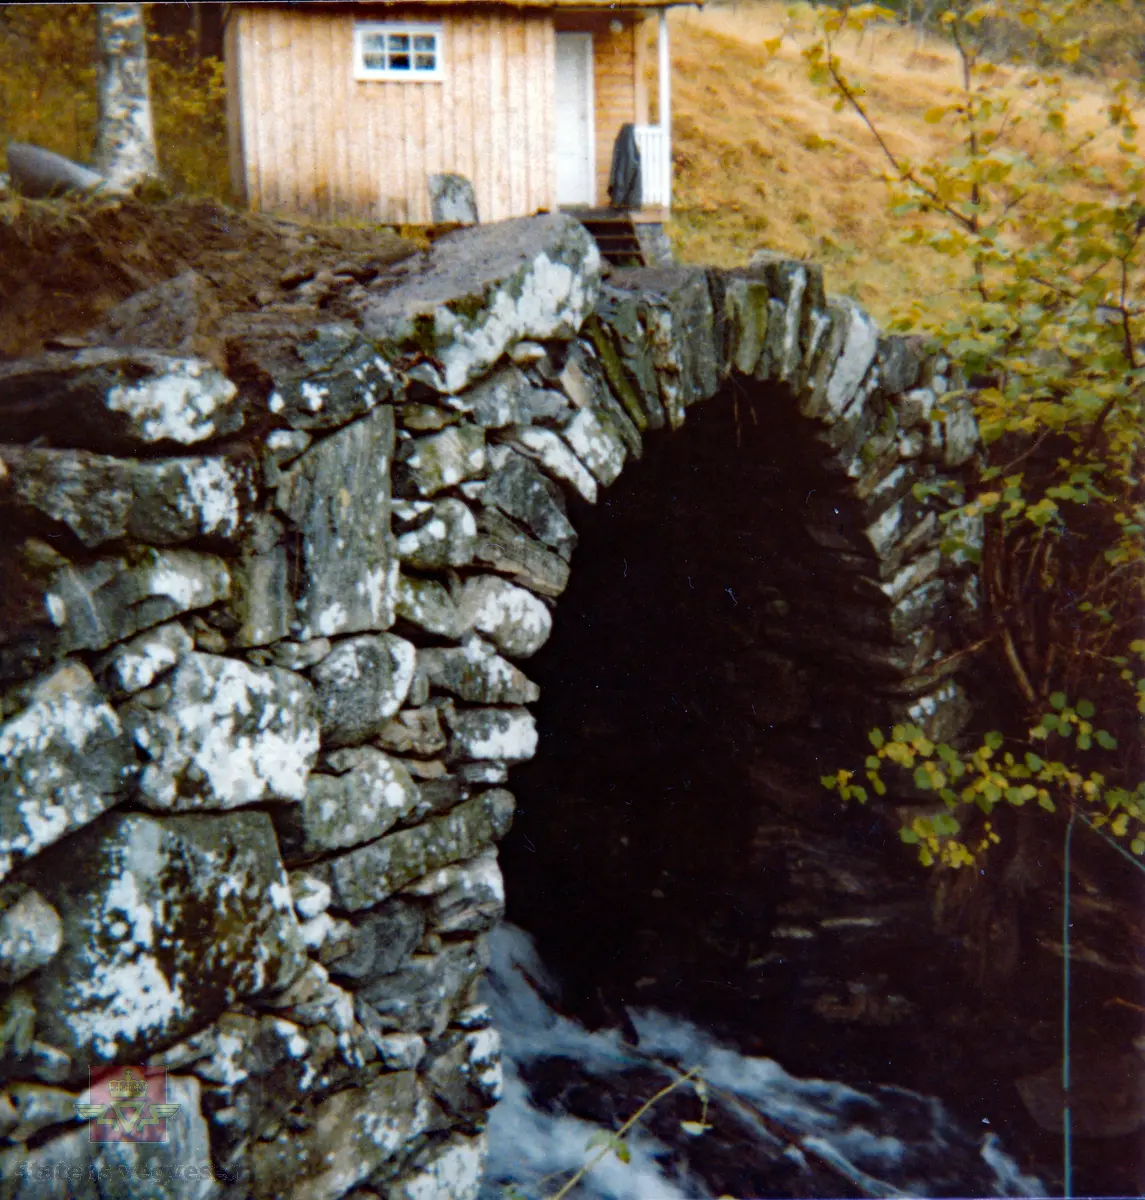 Gjerset steinhvelbru, som ligger like overfor fylkesveg 64 i Gjerdsetbygda i Rauma kommune. Brua ble bygd i 1833, ombygd i 1850 og restaurert i 1978. Brua ligger i dag på en privat veg som går til Gjerdset turistsenter.

Motivet viser brua under restaurering i 1978.